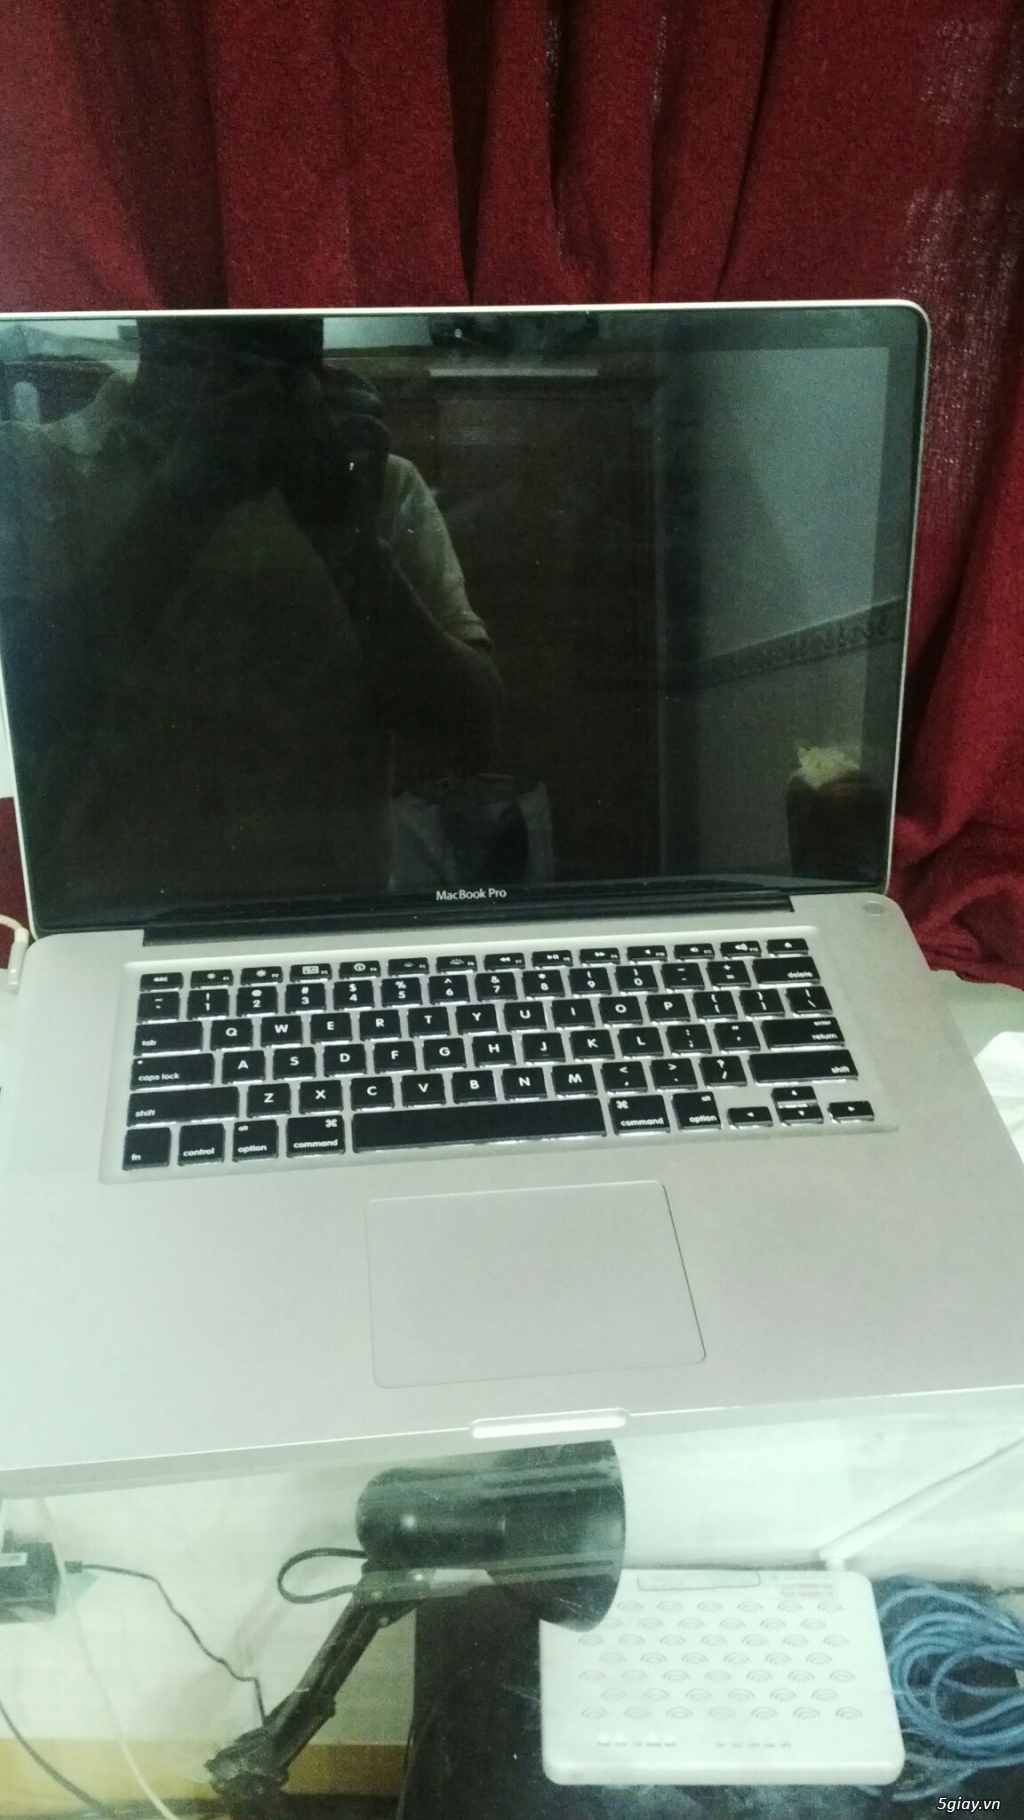 Cần thanh lý Macbook pro core i7, đời 2010, máy còn đẹp chất, giá tốt - 1